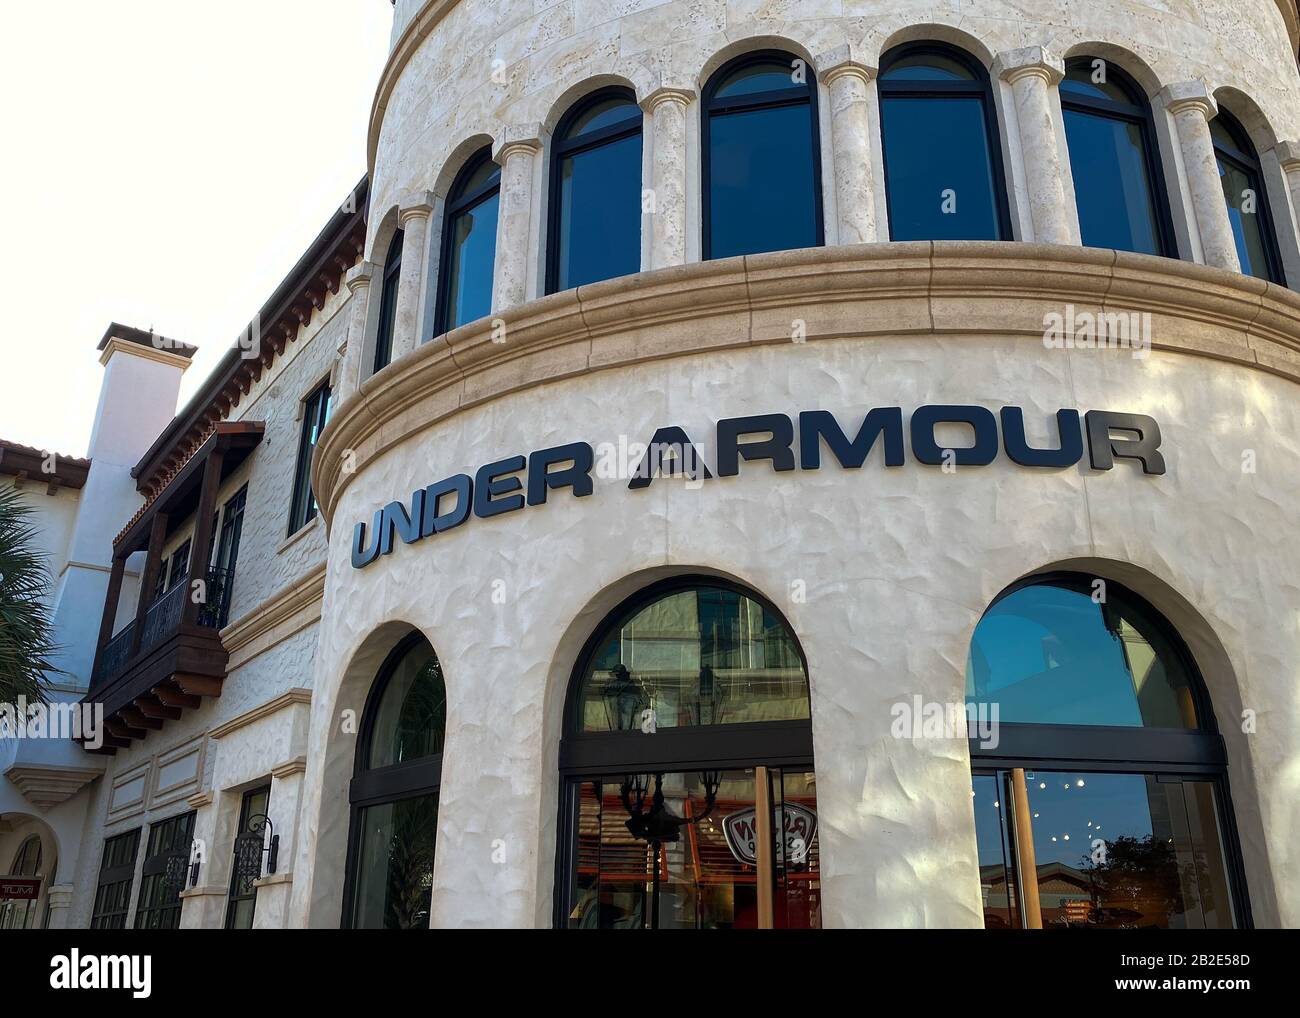 Orlando,FL/USA-2/13/20: Una tienda De ropa Under Armor en un centro  comercial cubierto. Under Armor, Inc. Es una empresa estadounidense que  fabrica calzado, deporte Fotografía de stock - Alamy